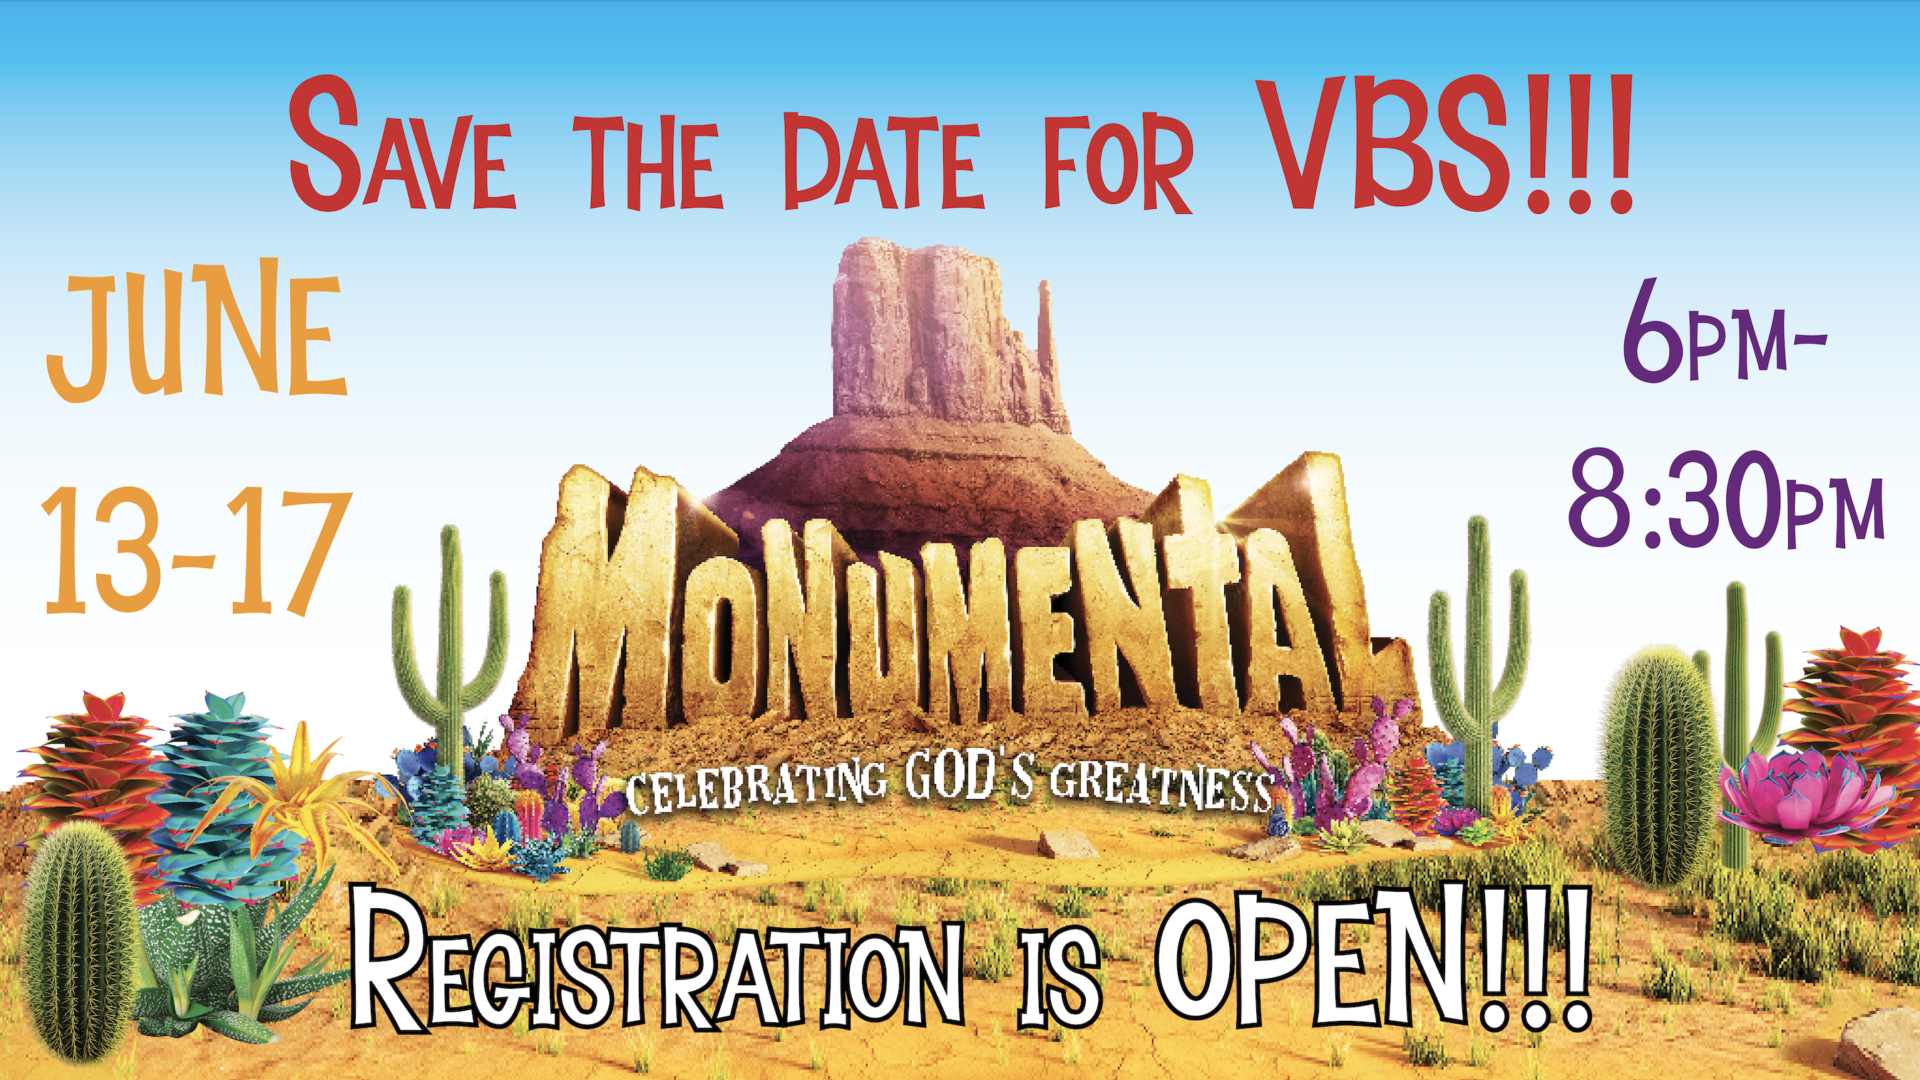 VBS Registration